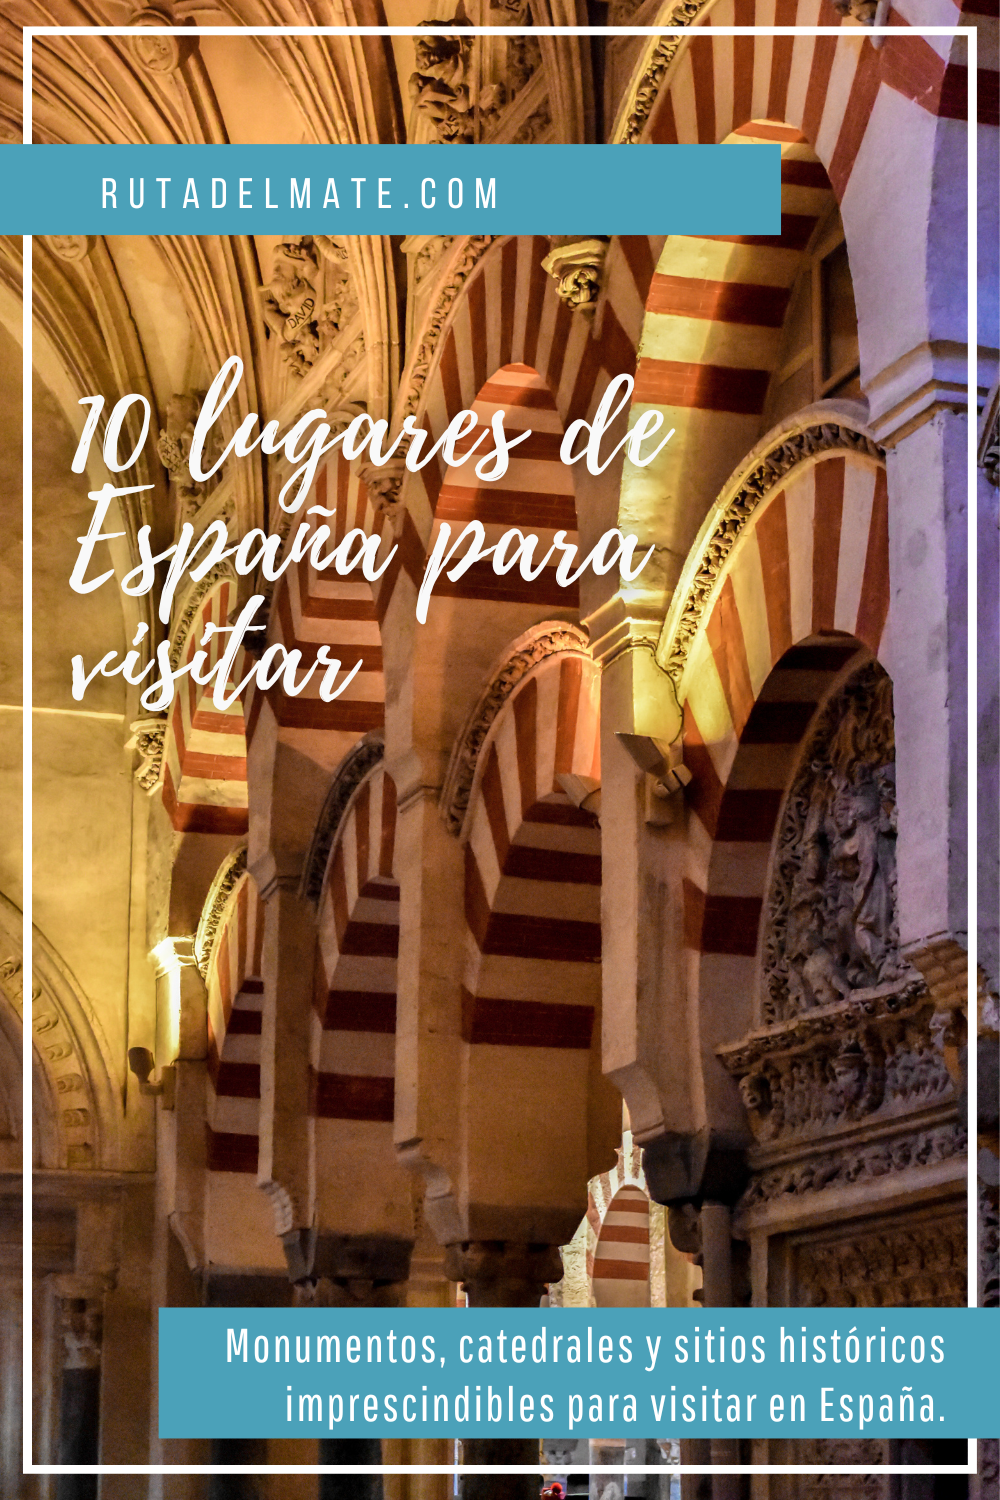 10 lugares que visitar en España